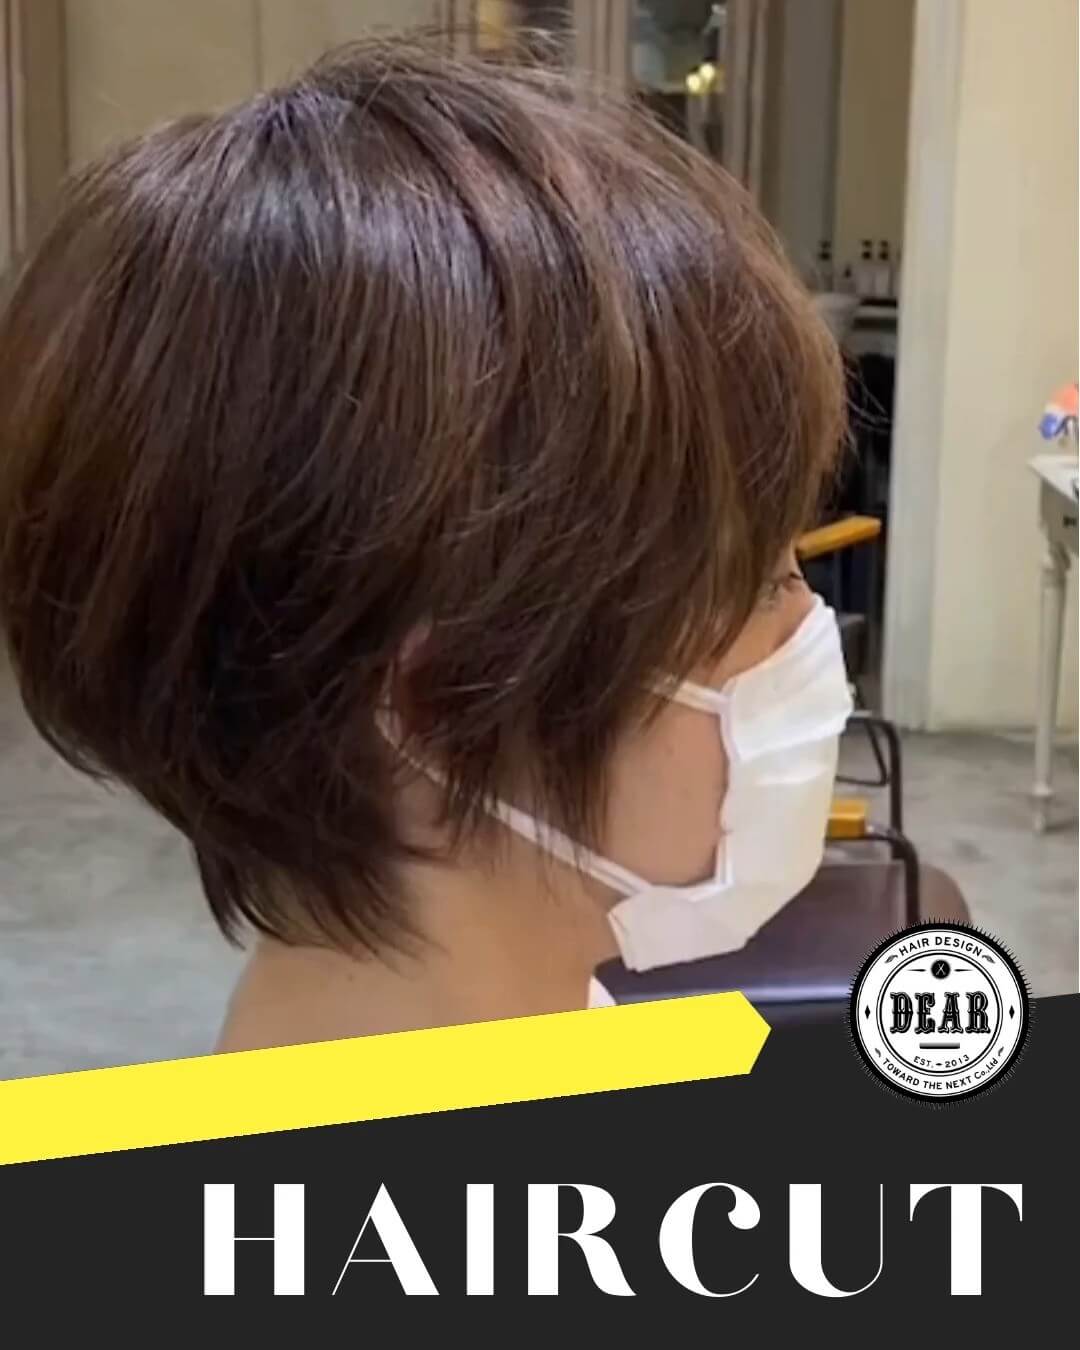 Women's Haircut【DEAR Hair Design】｜เว็บไซต์รวมร้านทำผมในกรุงเทพฯ